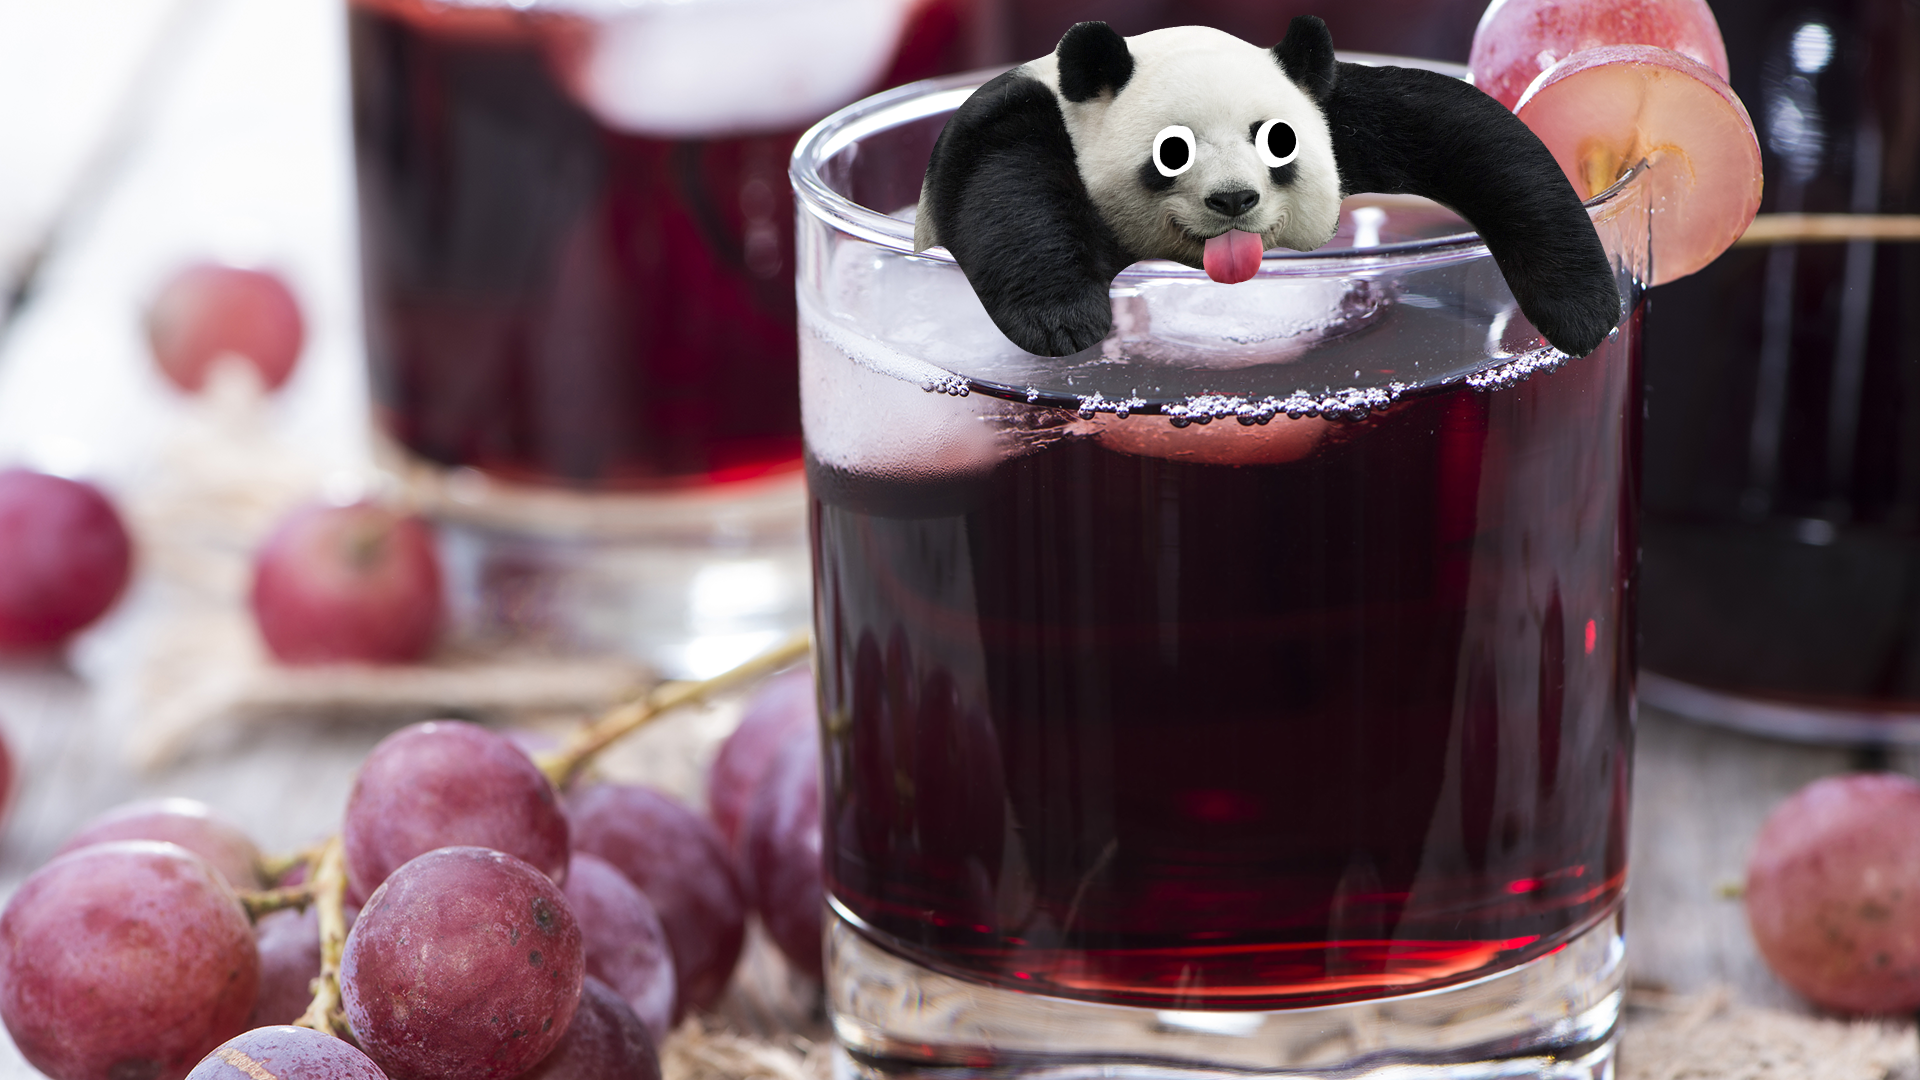 Derpy panda in some grape juice